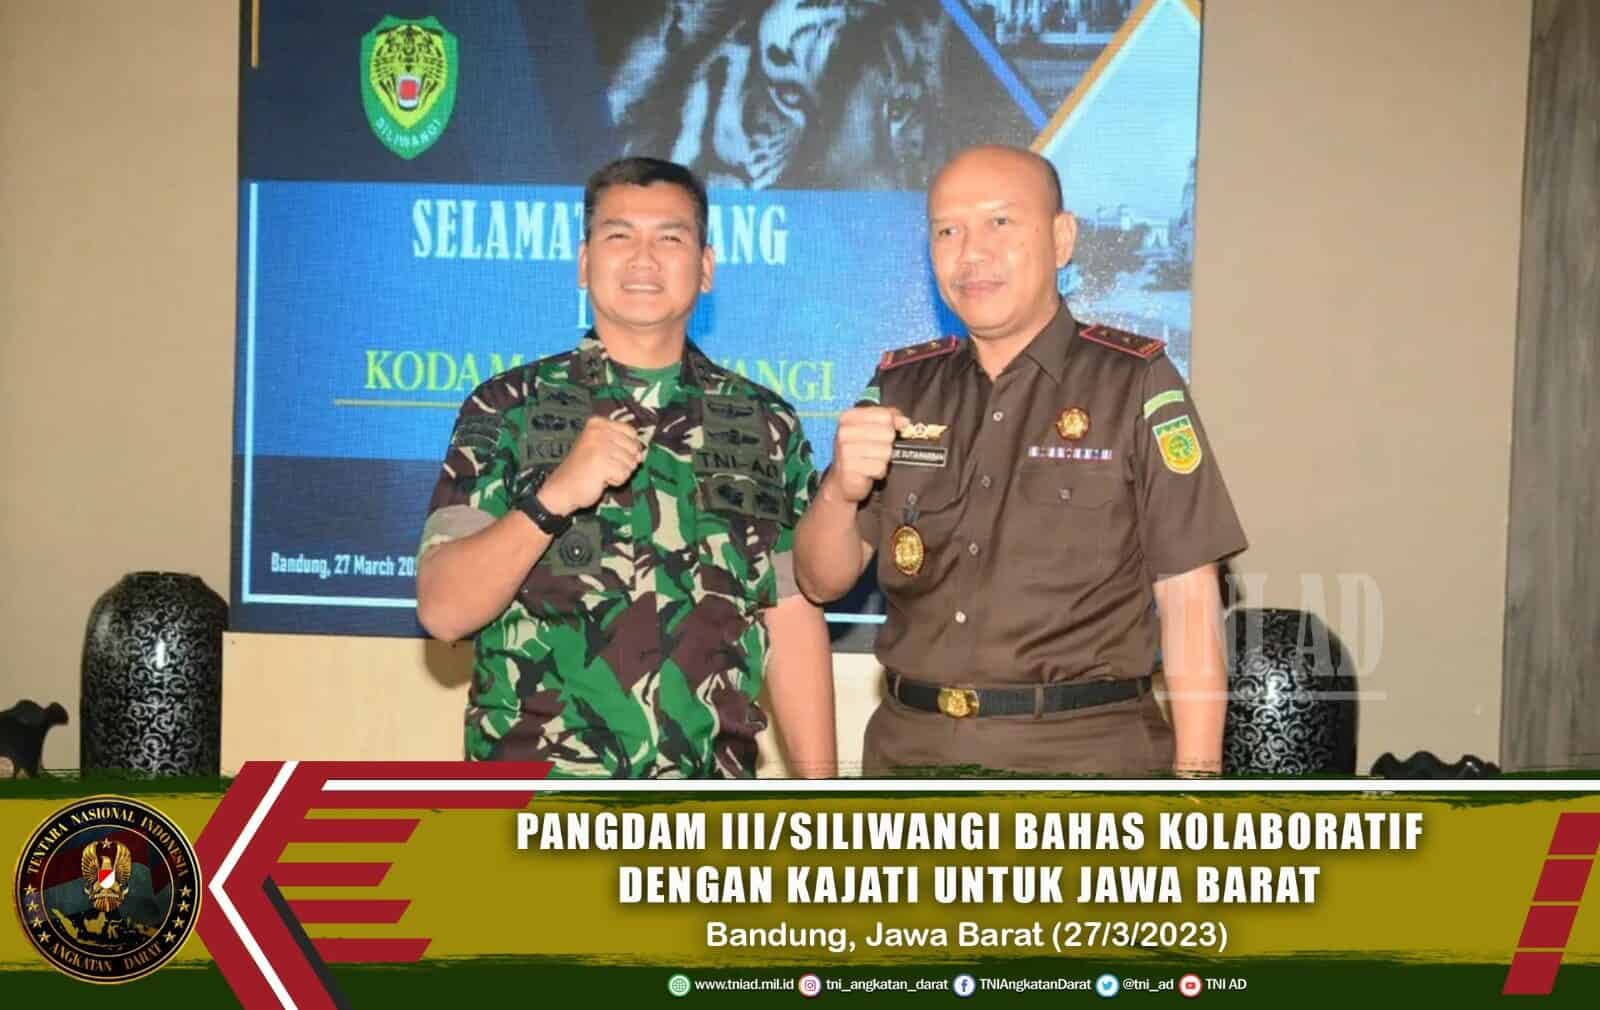 Pangdam III/Siliwangi Bahas Kolaboratif dengan Kajati untuk Jawa Barat